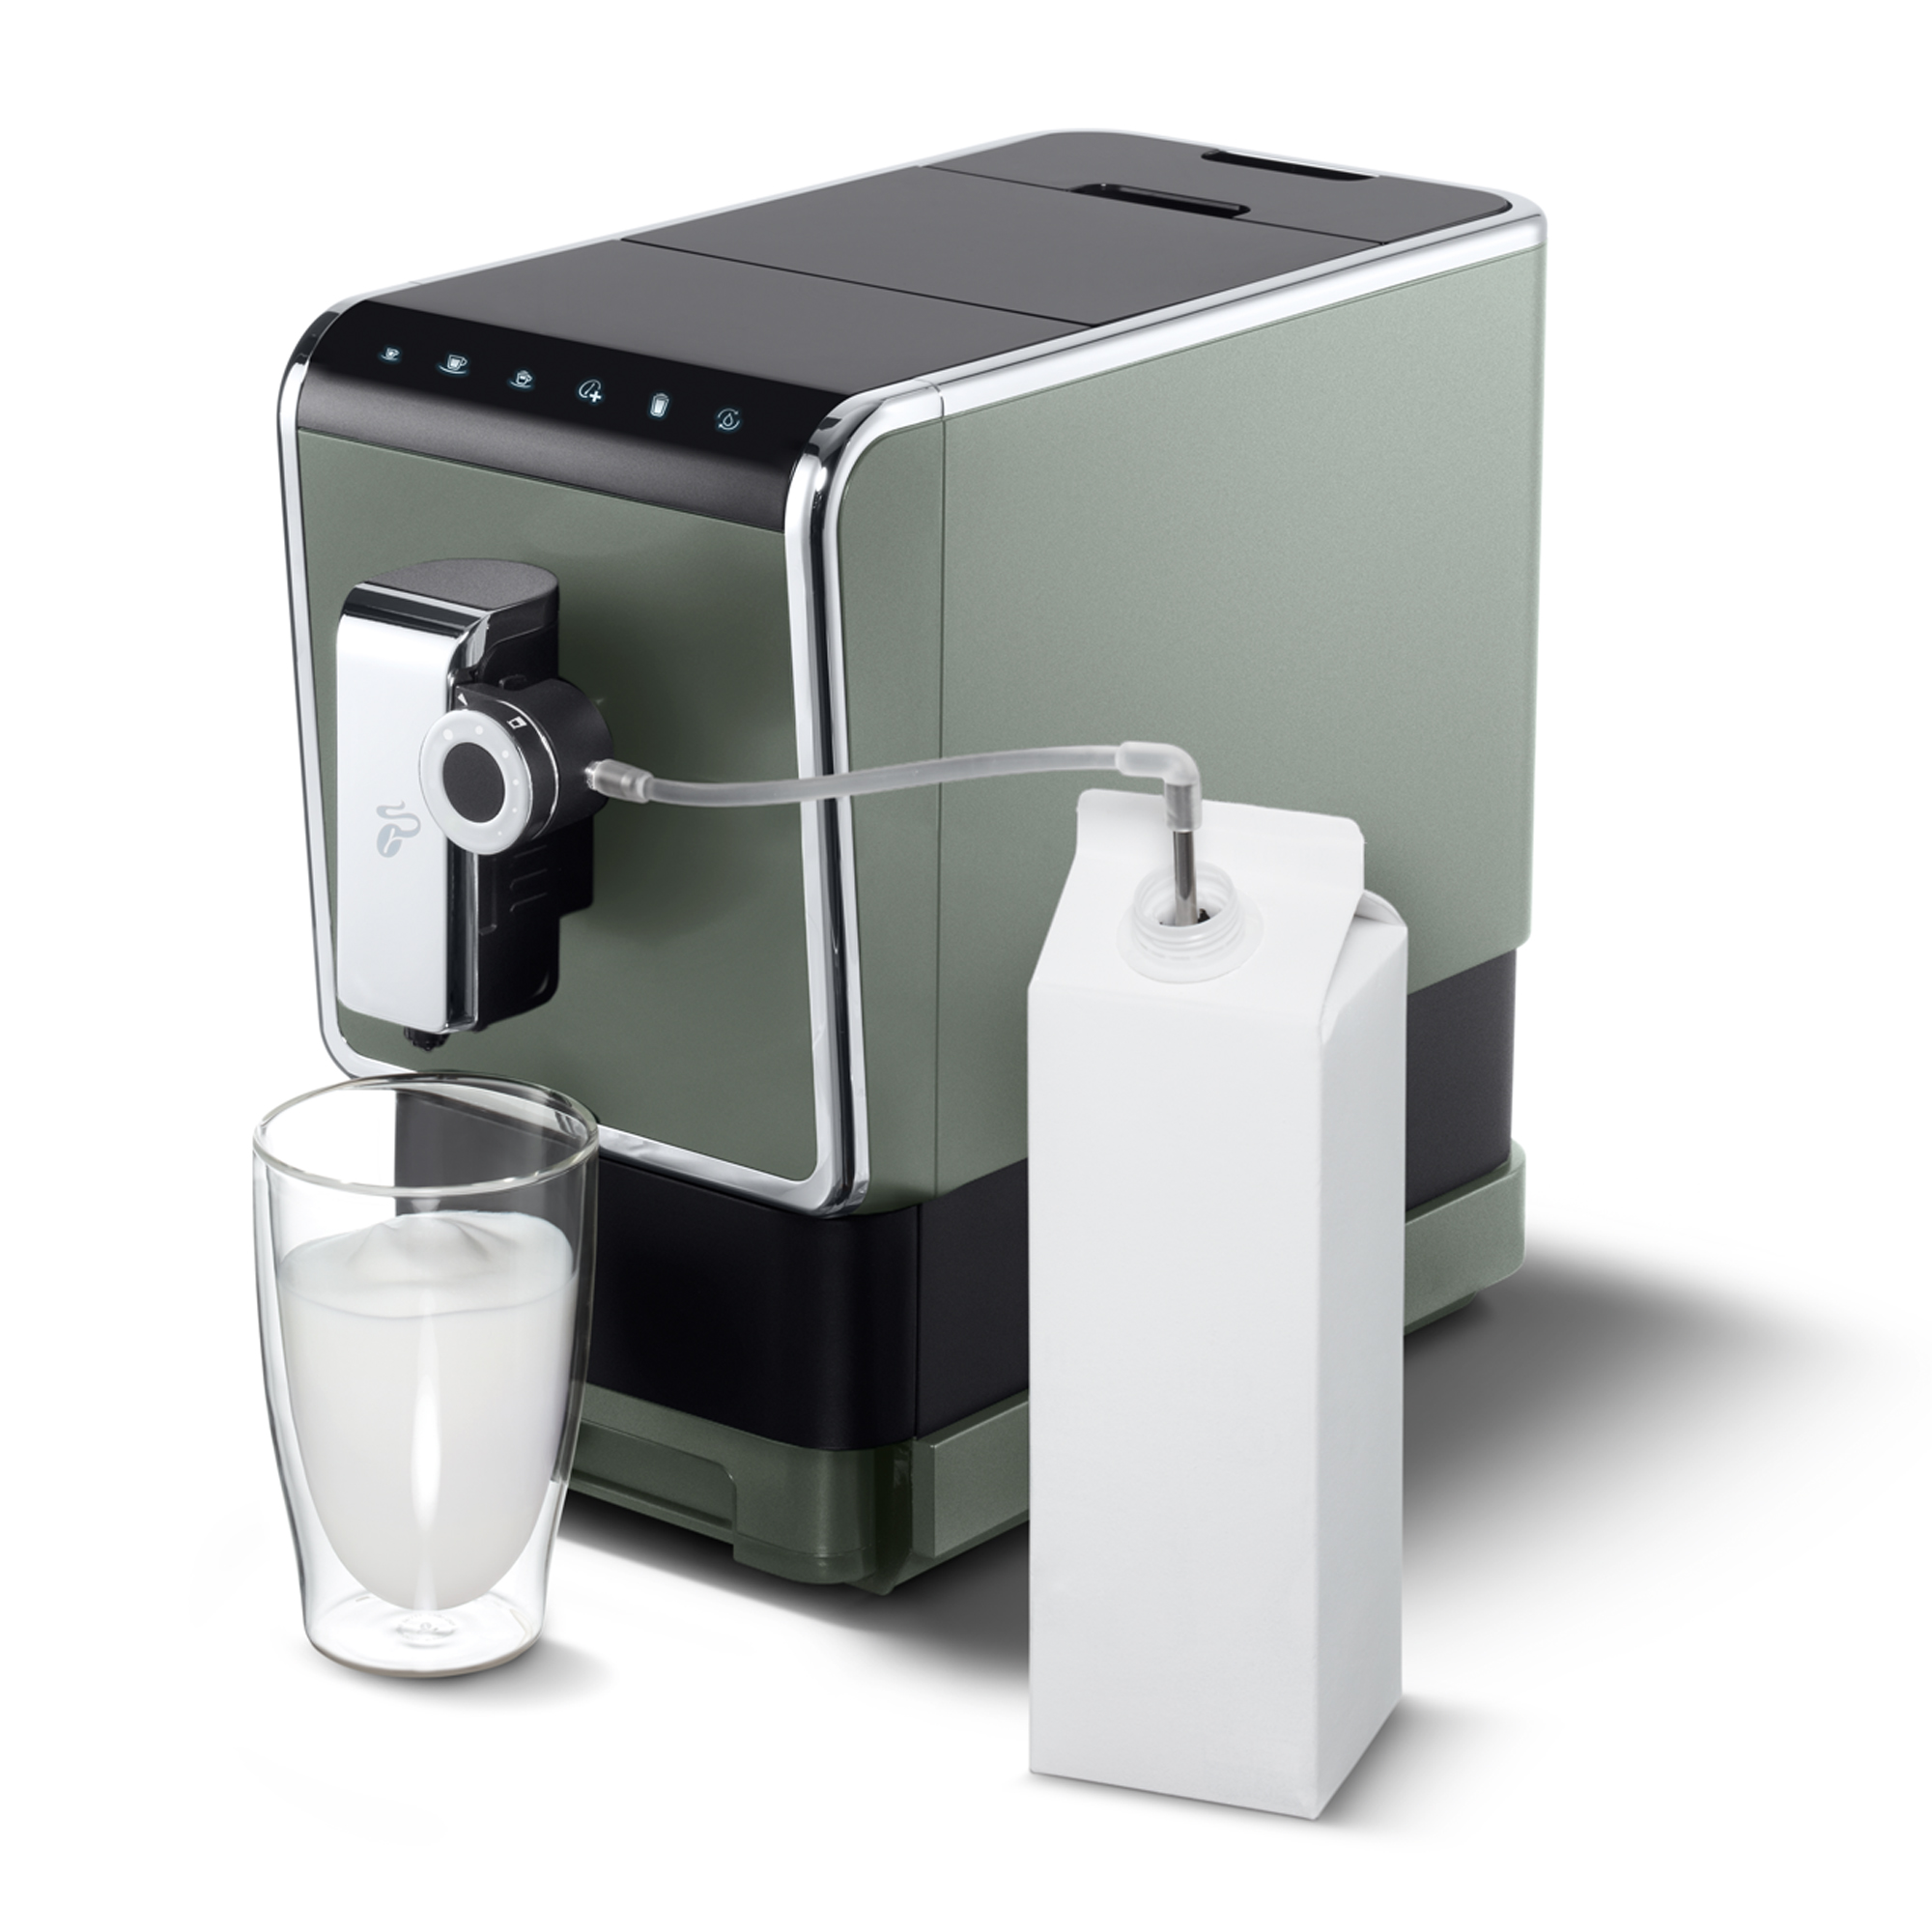 Esperto Caffè Pro Metallic Crema, für Milchspezialitäten Mint TCHIBO Kaffeevollautomat Espresso und